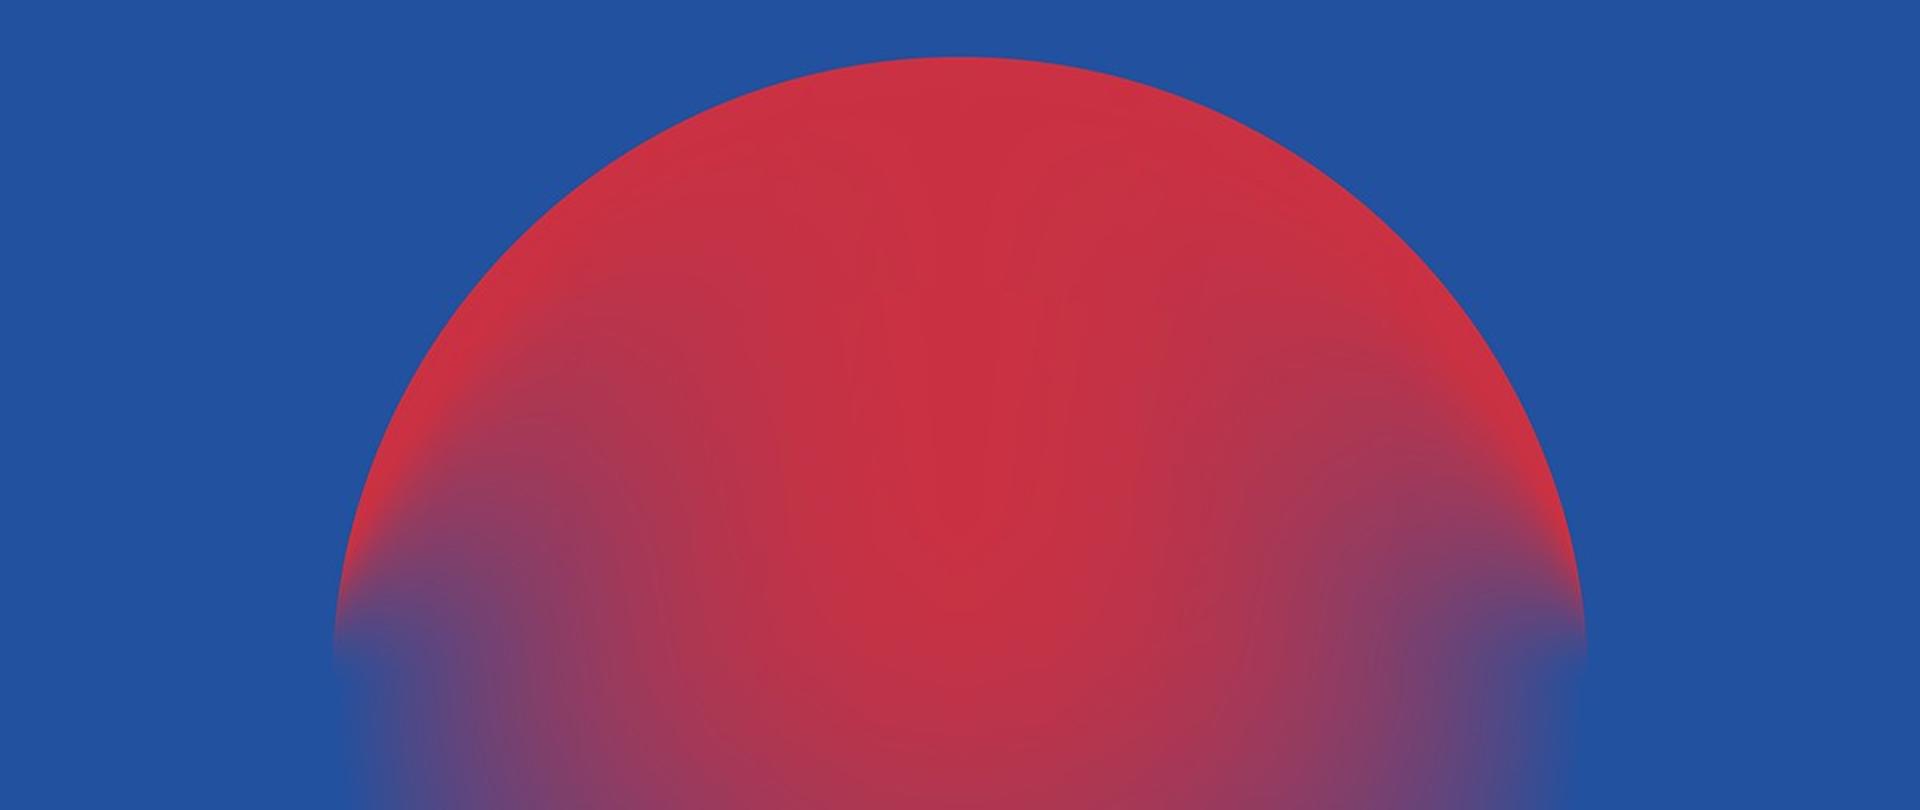 Grafika przedstawiająca zachodzące czerwone słońce za niewidoczny horyzont. Na środku grafiki o granatowym tle znajduje się czerwone półkole o wyraźnych konturach, które poniżej połowy grafiki jest mocno rozmyte.